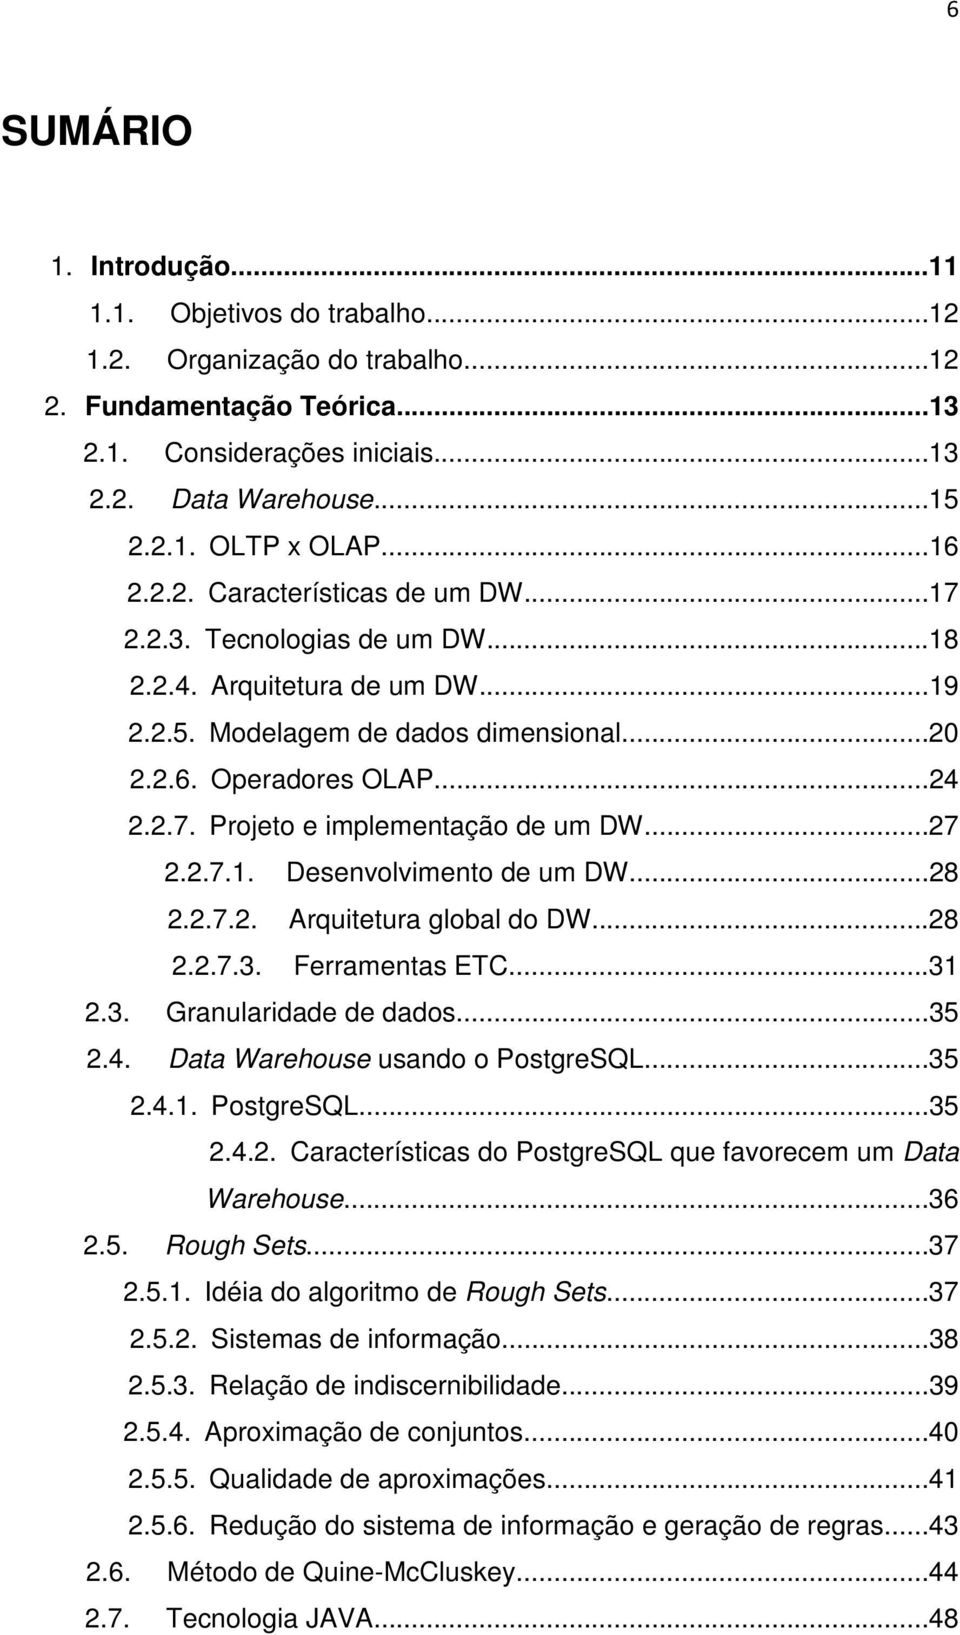 ..27 2.2.7.1. Desenvolvimento de um DW...28 2.2.7.2. Arquitetura global do DW...28 2.2.7.3. Ferramentas ETC...31 2.3. Granularidade de dados...35 2.4. Data Warehouse usando o PostgreSQL...35 2.4.1. PostgreSQL...35 2.4.2. Características do PostgreSQL que favorecem um Data Warehouse.